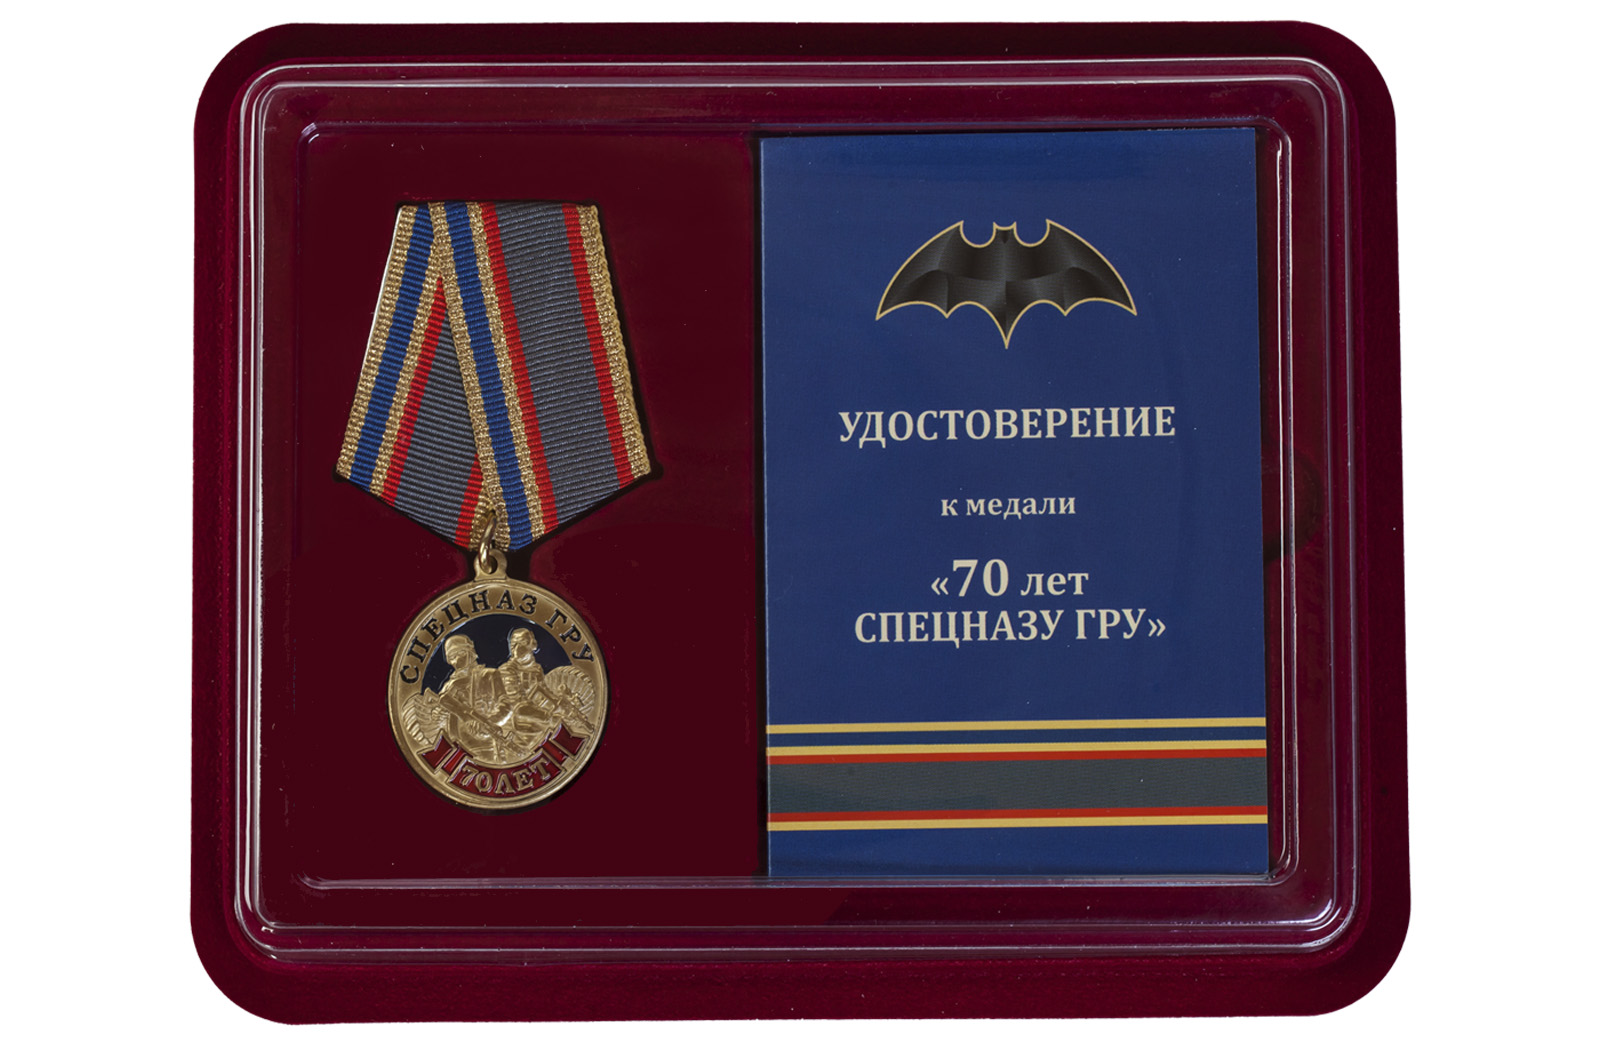 Купить юбилейную медаль 70 лет Спецназу ГРУ по лучшей цене